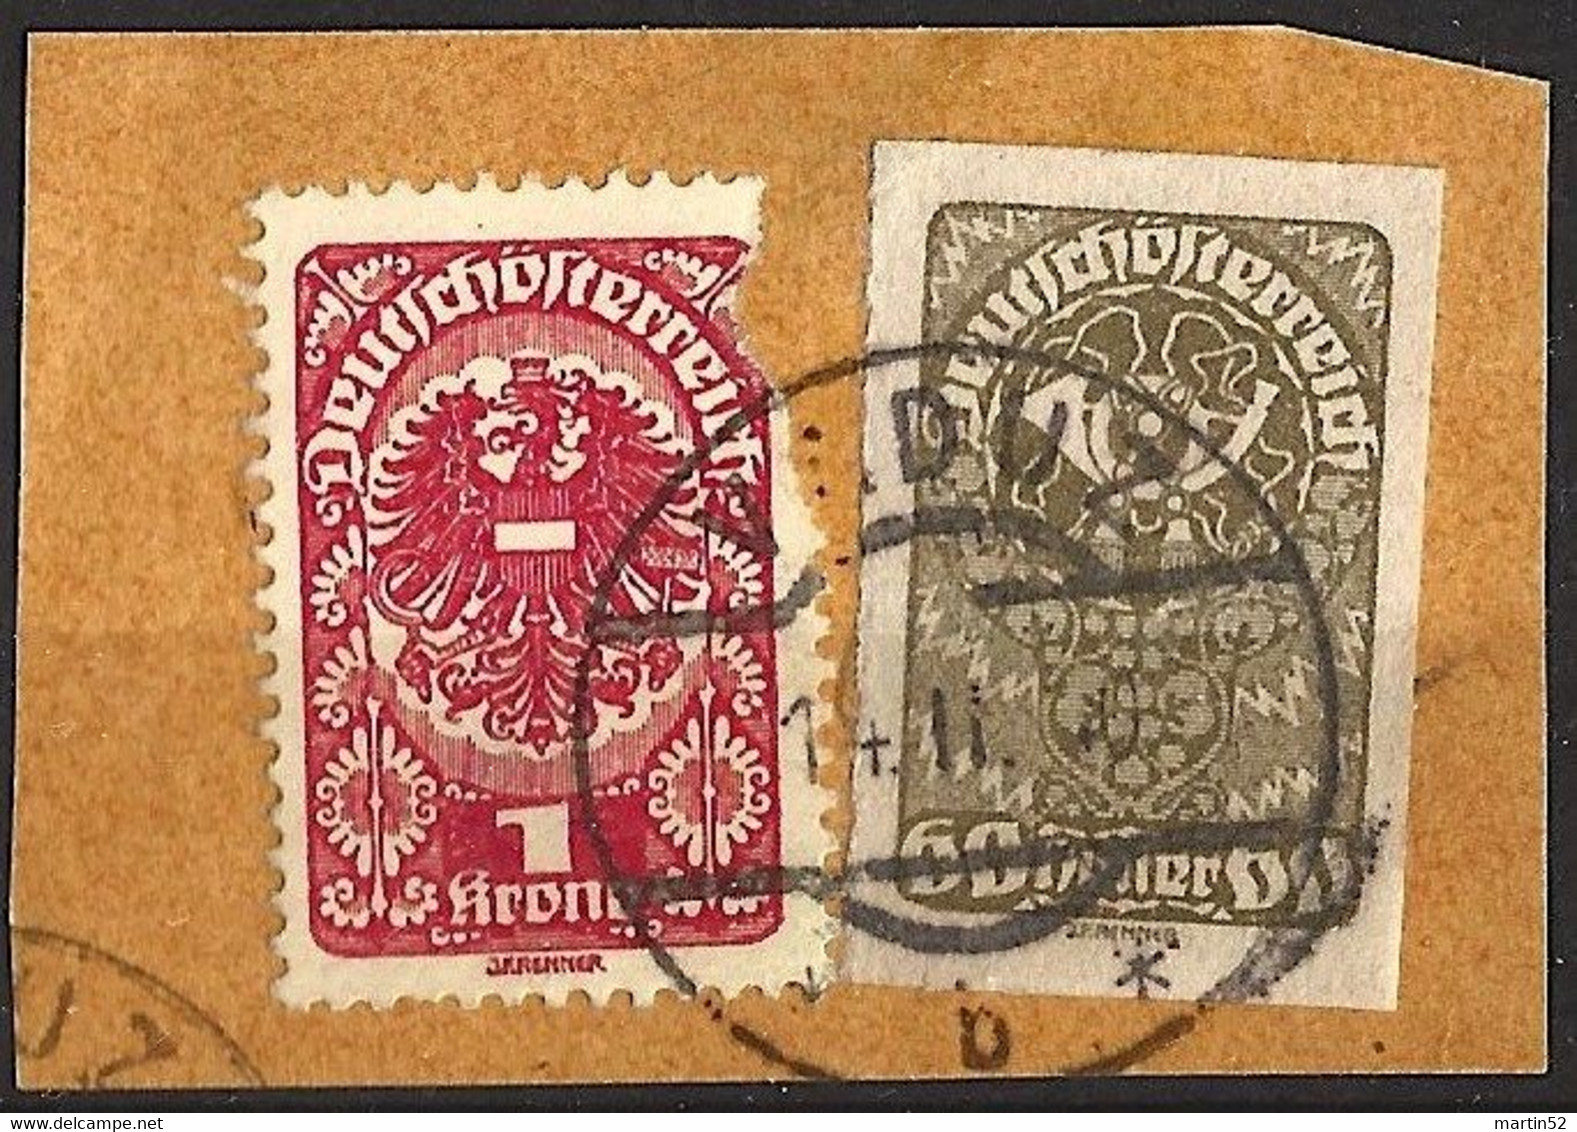 Liechtenstein Mitläufer 1920: Deutschösterreich Posthorn 60 Heller 1919 Michel-N° 283 O VADUZ 14.II.20 (LBK CHF 60.00) - ...-1912 Prephilately